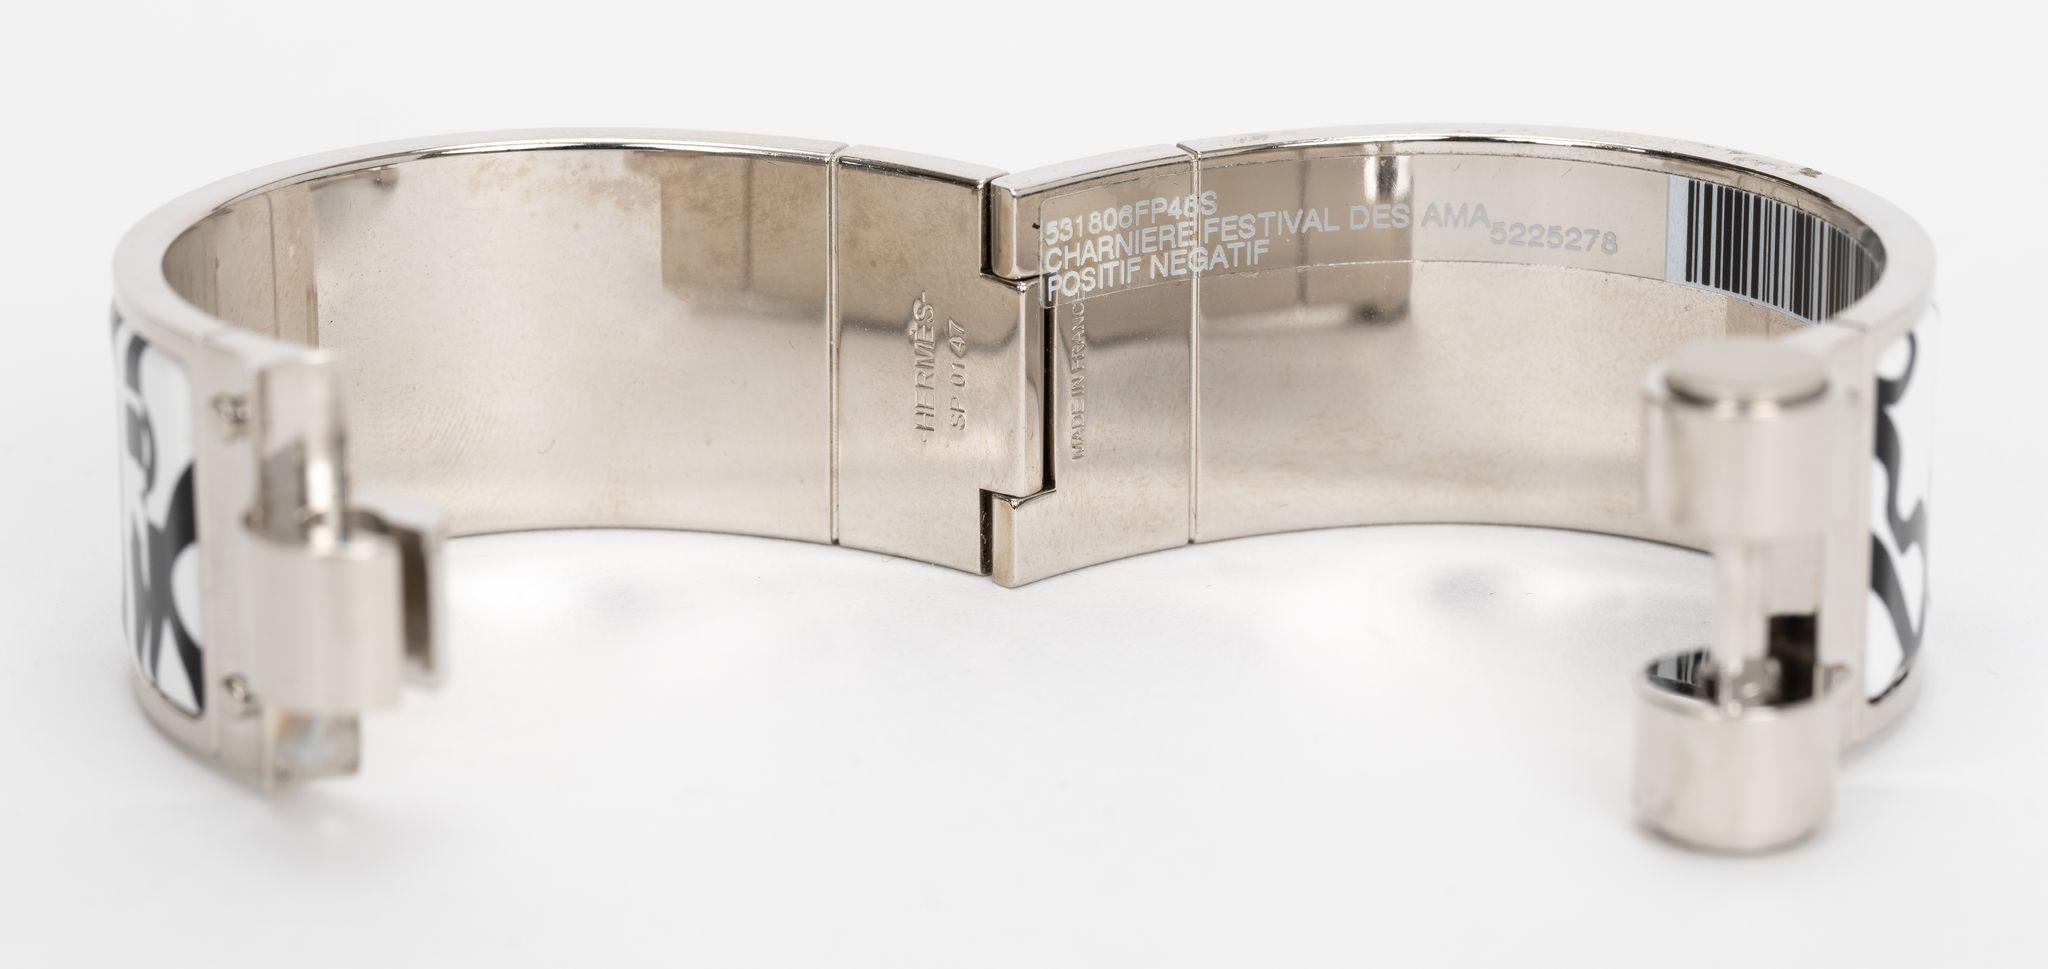 Das Hermes Charniere Scharnierarmband hat einen Körper aus bedruckter Emaille und Silberpalladium. Positiver/negativer Druck. Die schöne Silhouette ist mit einem Druckverschluss versehen. Brandneu in unbenutztem Zustand, Originalaufkleber noch